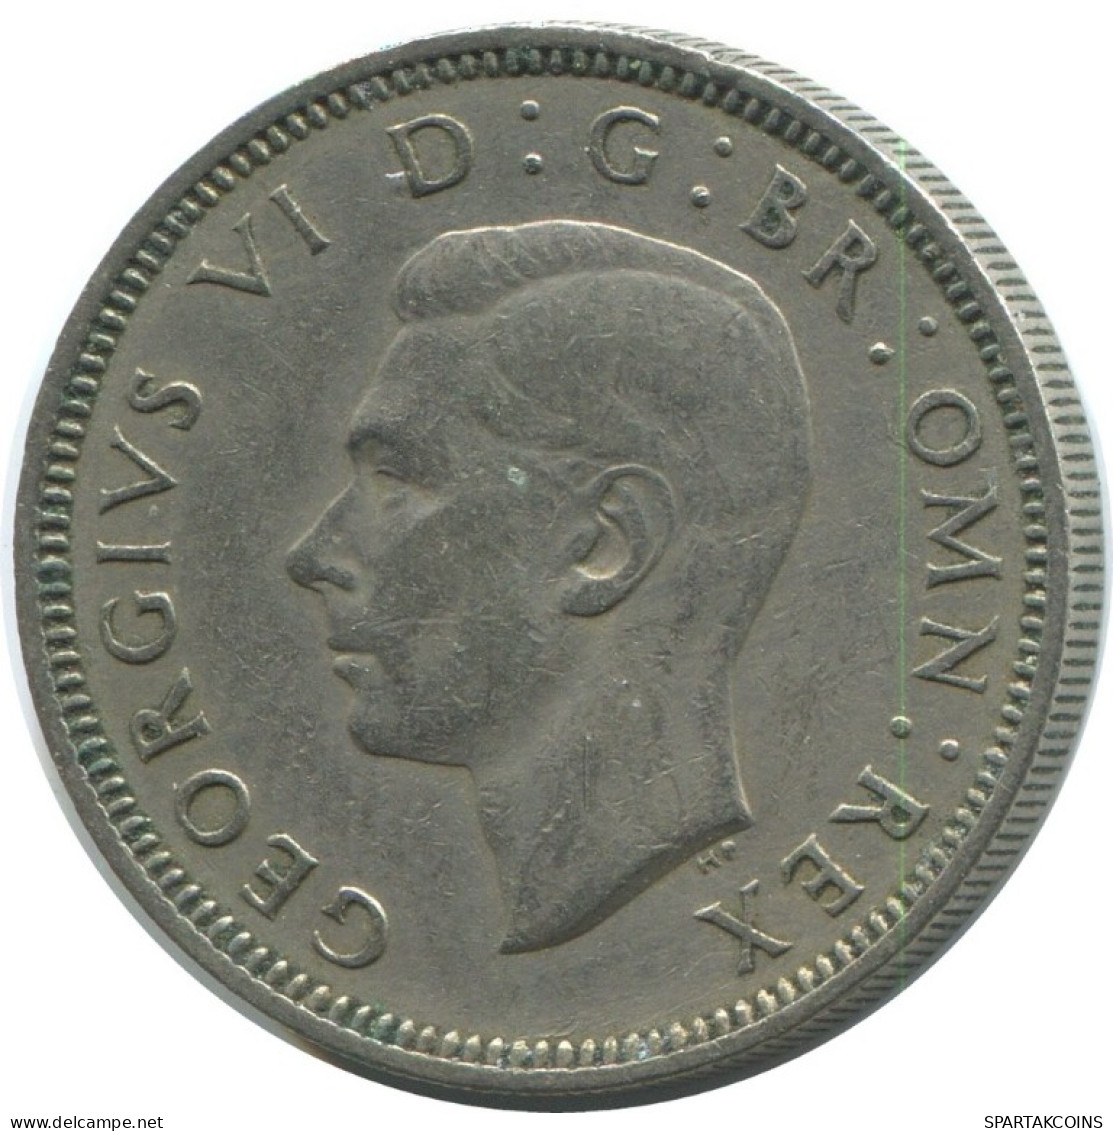 SHILLING 1950 UK GROßBRITANNIEN GREAT BRITAIN Münze #AG979.1.D.A - I. 1 Shilling